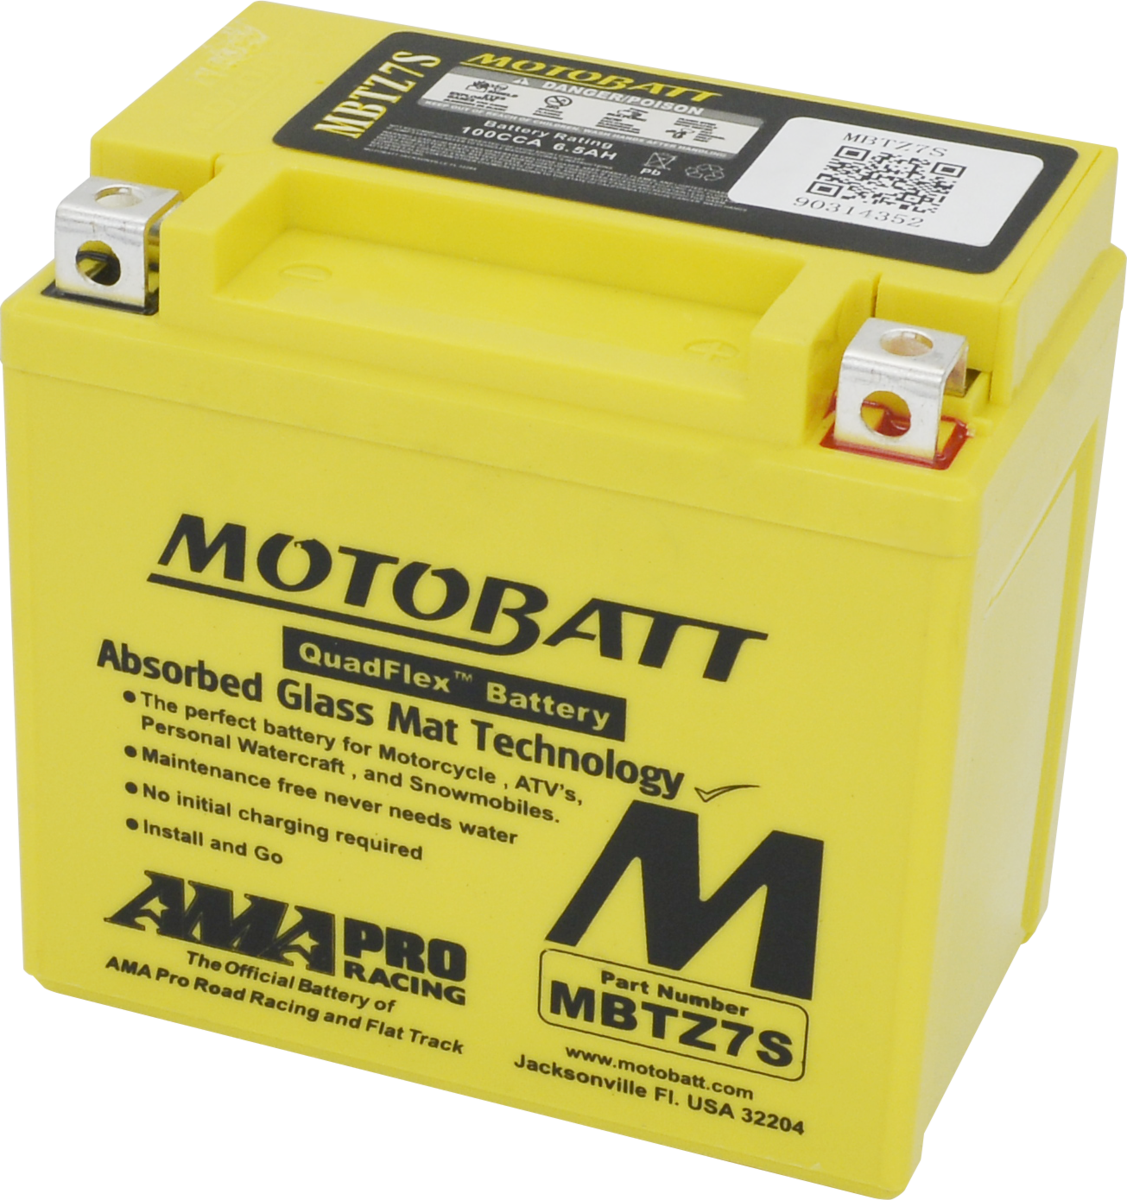 MBTZ7S Motobatt 12V AGM Battery